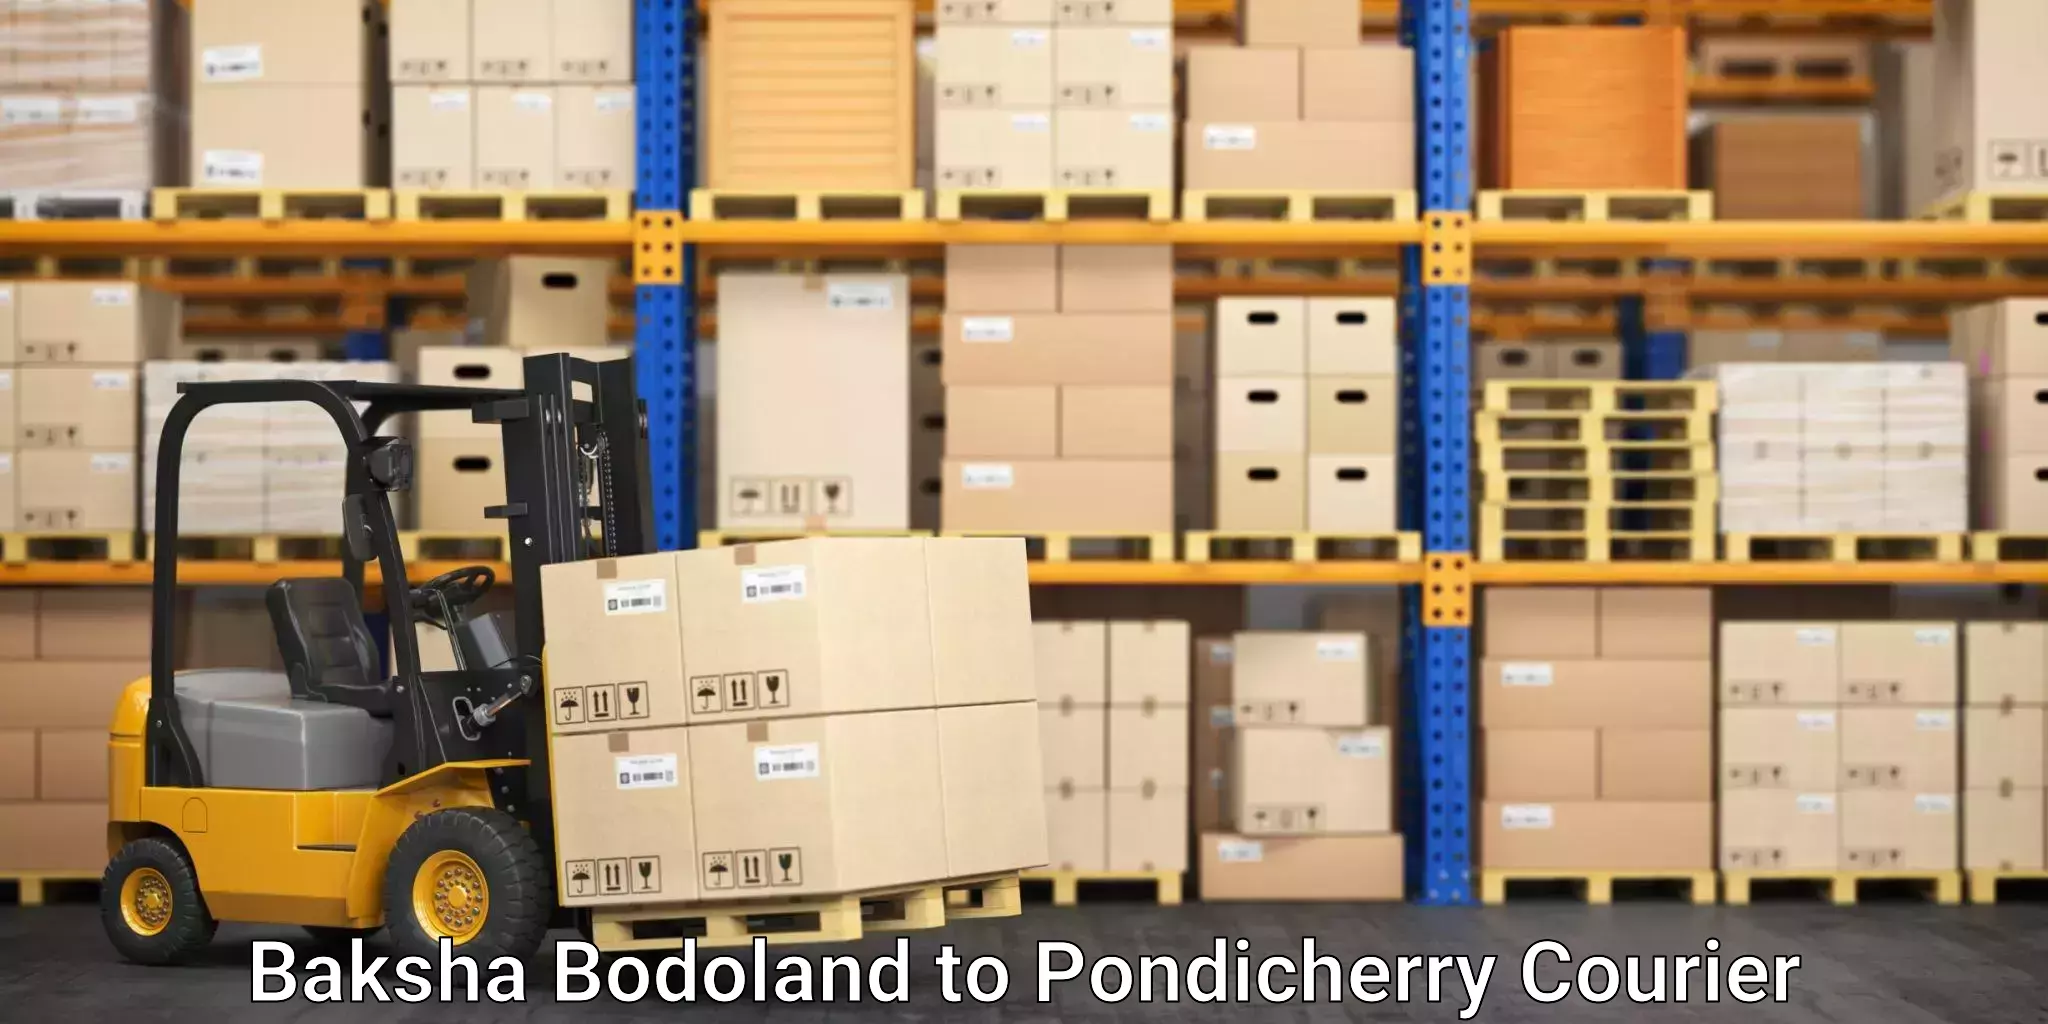 Same-day delivery solutions Baksha Bodoland to Pondicherry